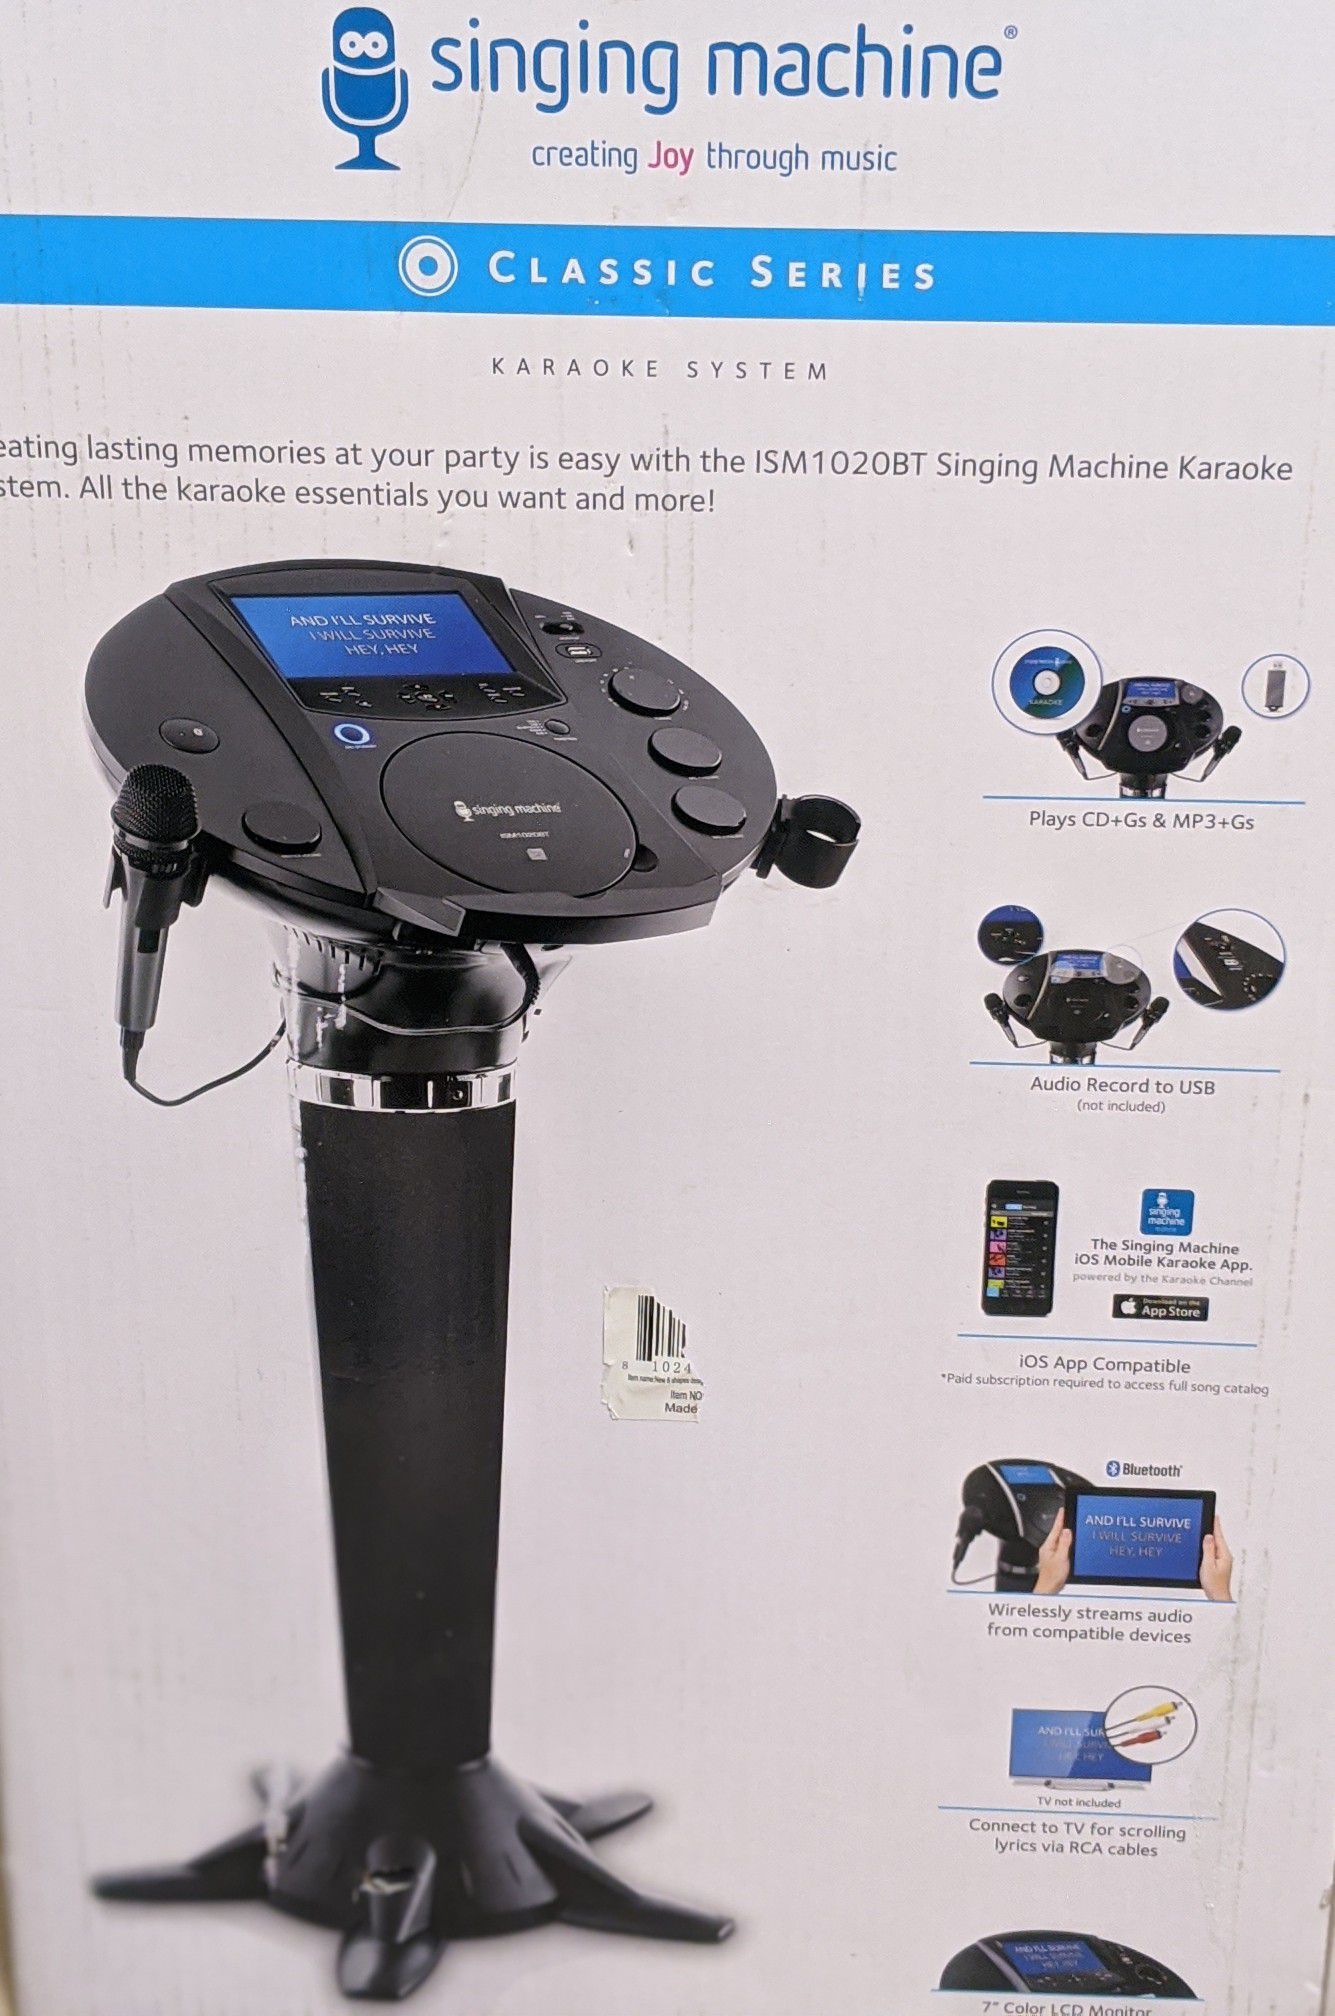 Karaoke System- Singing machine